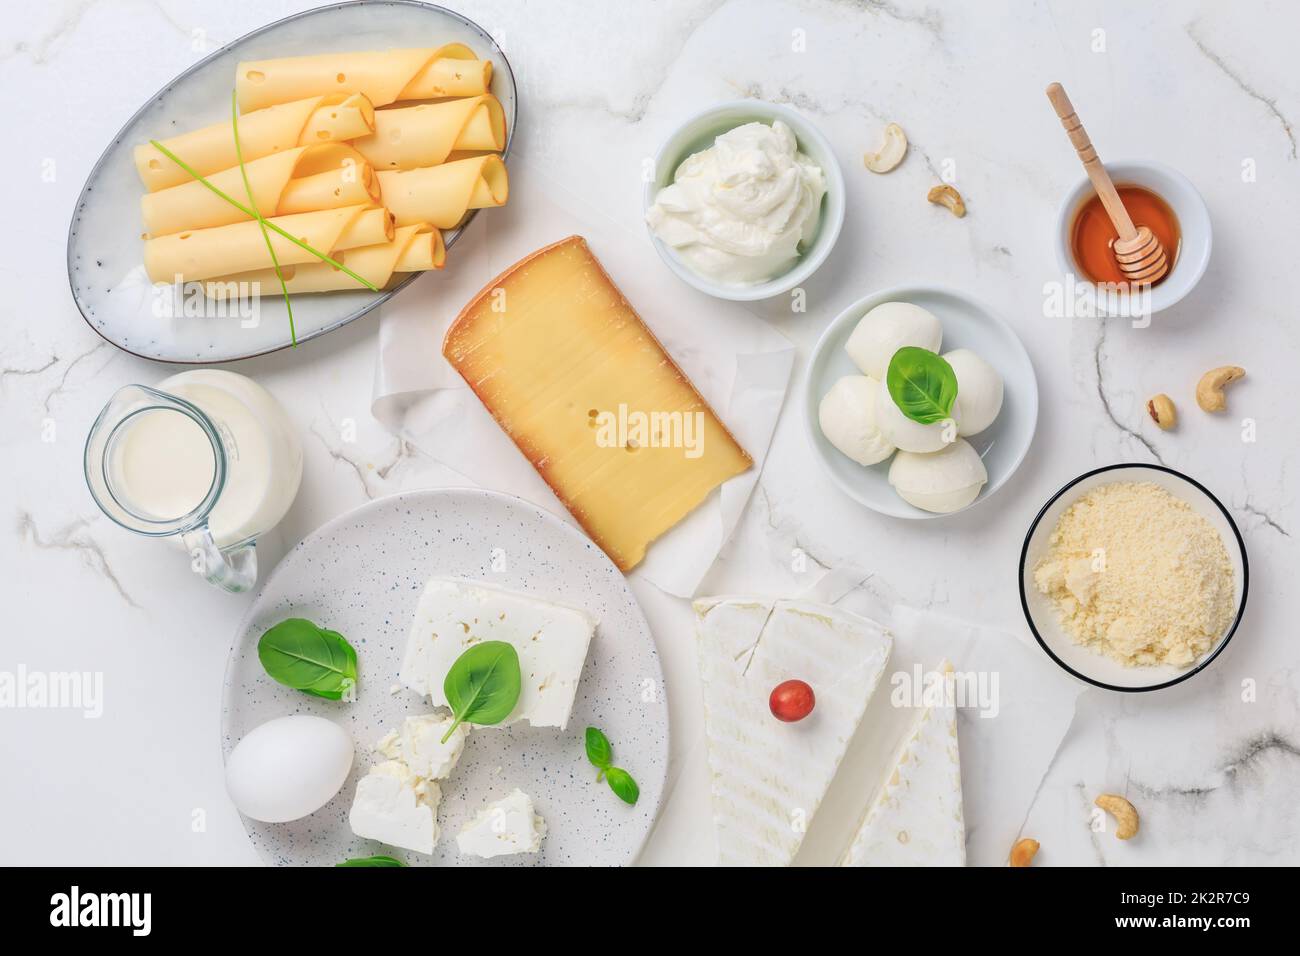 Assortiment de produits laitiers frais, lait, fromage cottage, œufs, yaourt Banque D'Images